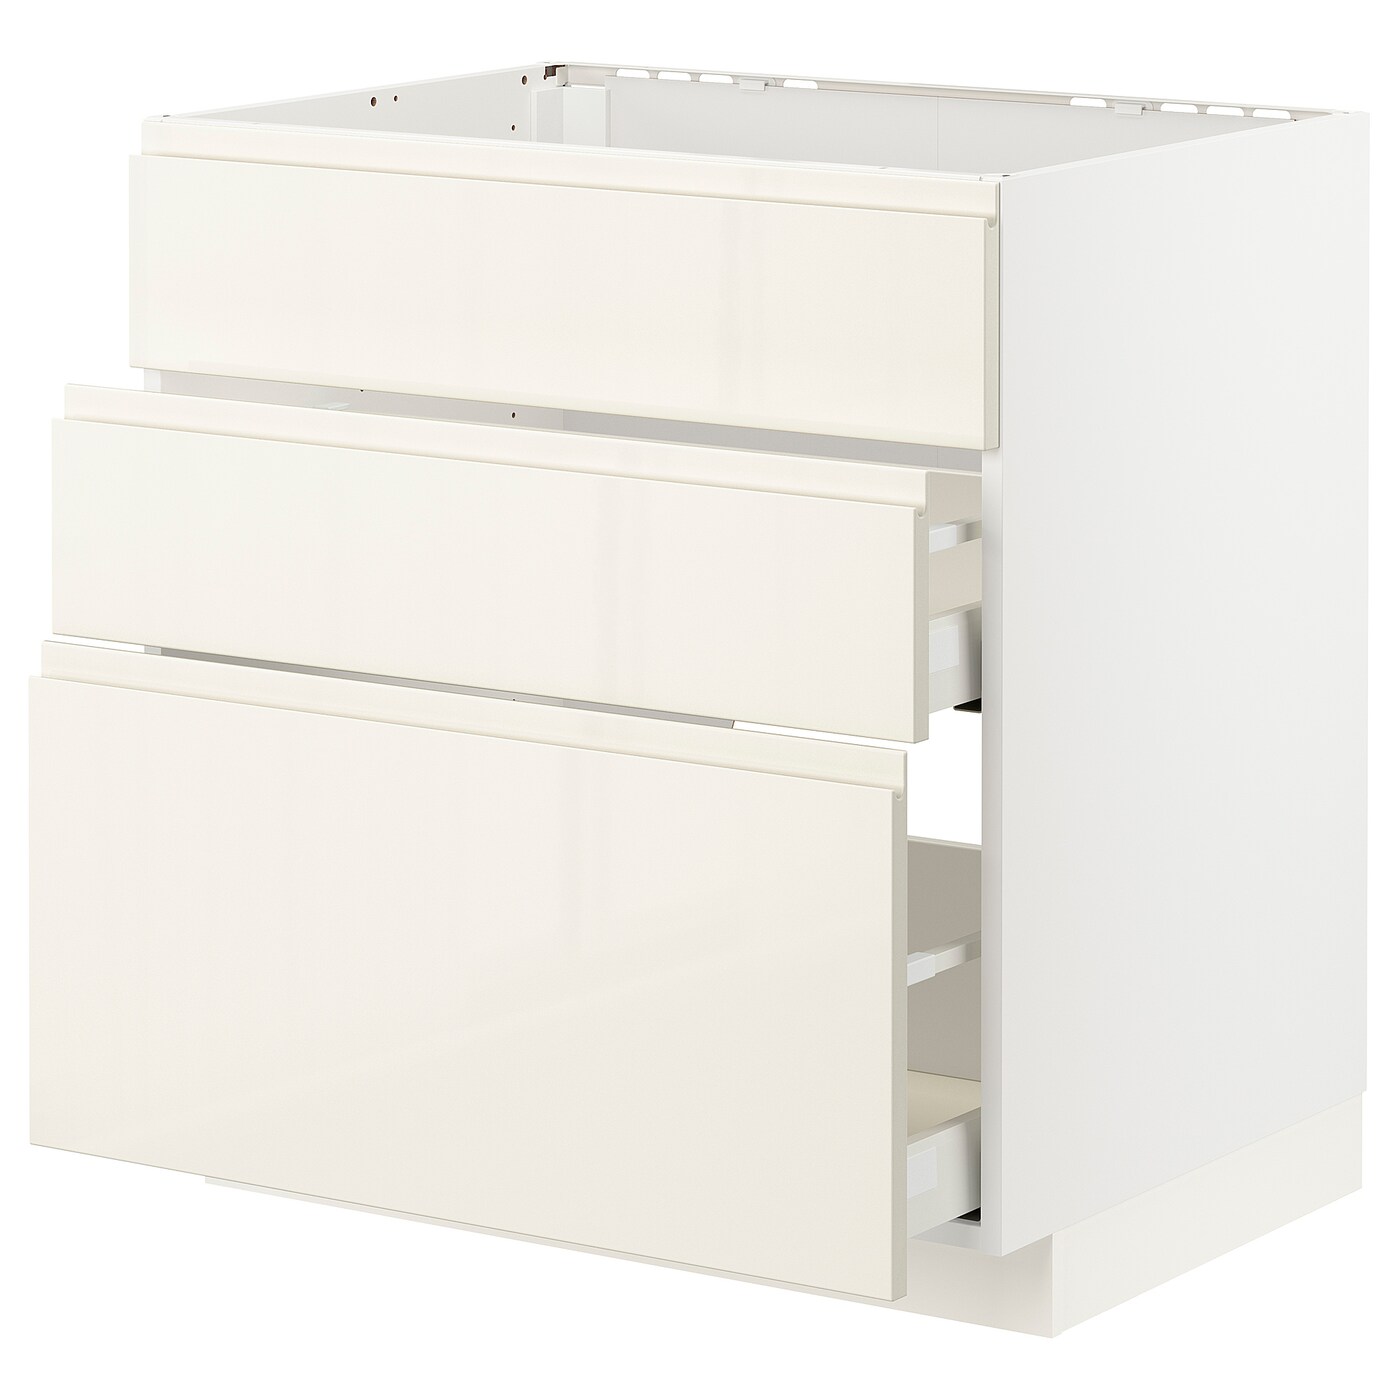 Напольный кухонный шкаф  - IKEA METOD MAXIMERA, 80x62x80см, белый, МЕТОД МАКСИМЕРА ИКЕА